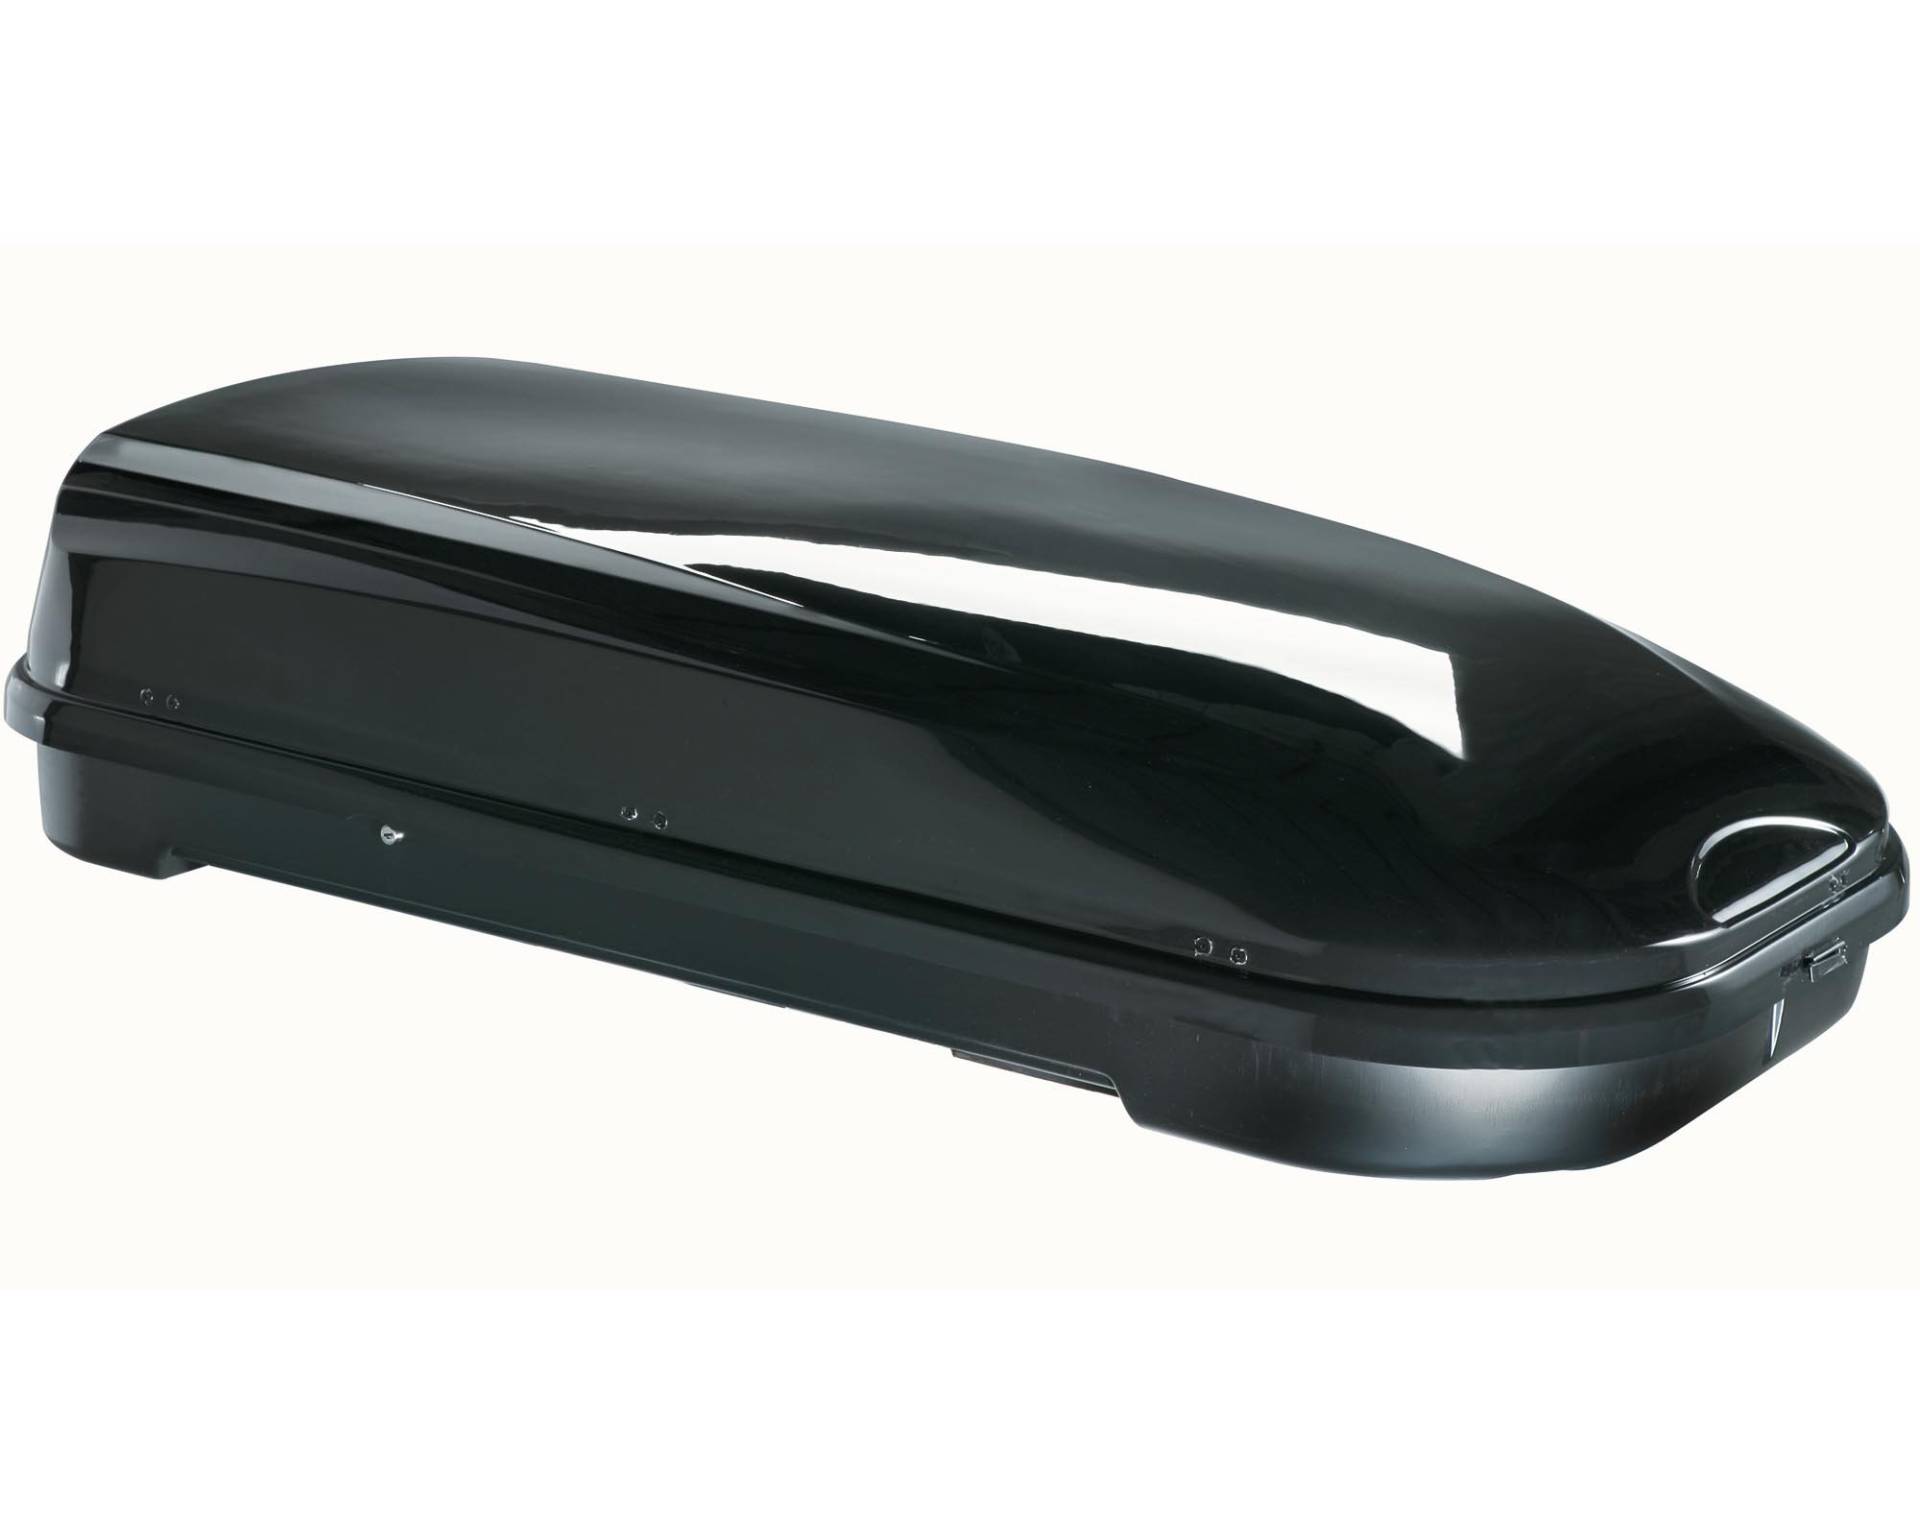 Skibox schwarz VDP JUFL580 580 Liter abschließbar + Alu-Relingträger Quick aufliegende Reling im Set Alu kompatibel mit Opel Zafira II 2007-2014 von VDP